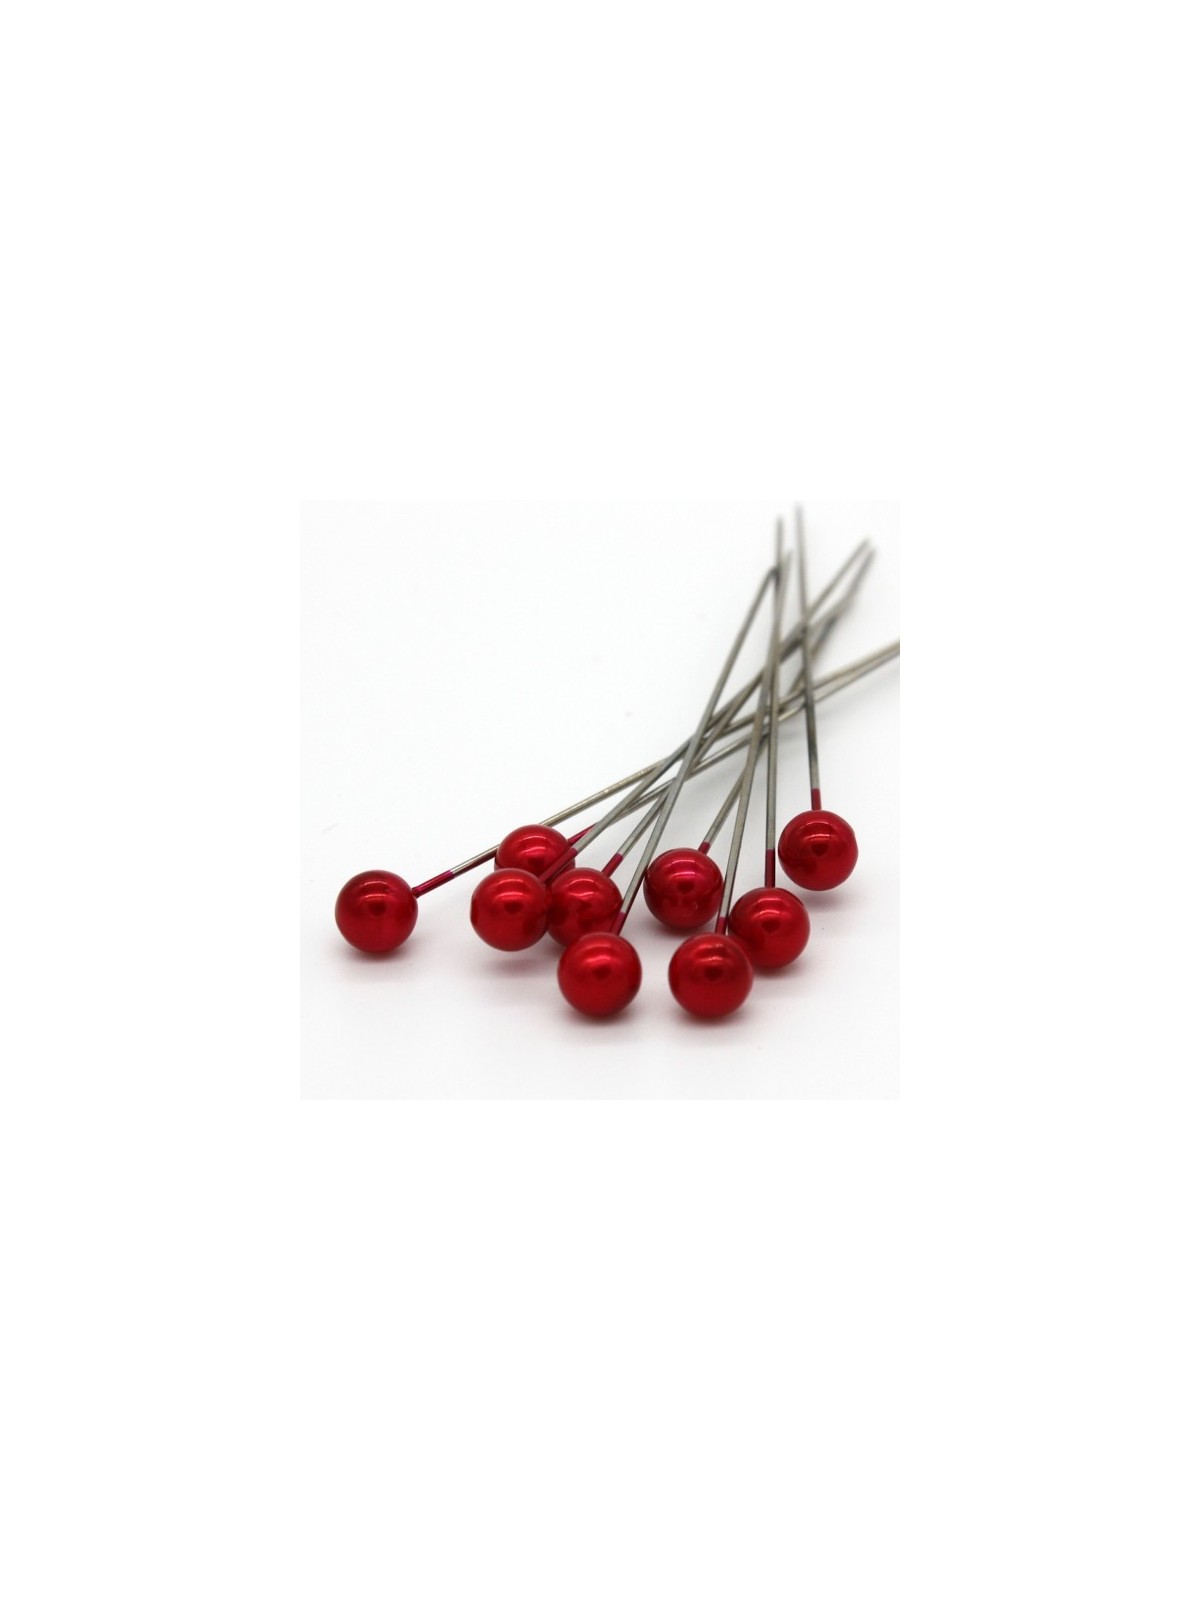 Dekorační špendlík - červená perla - 65mm/9ks